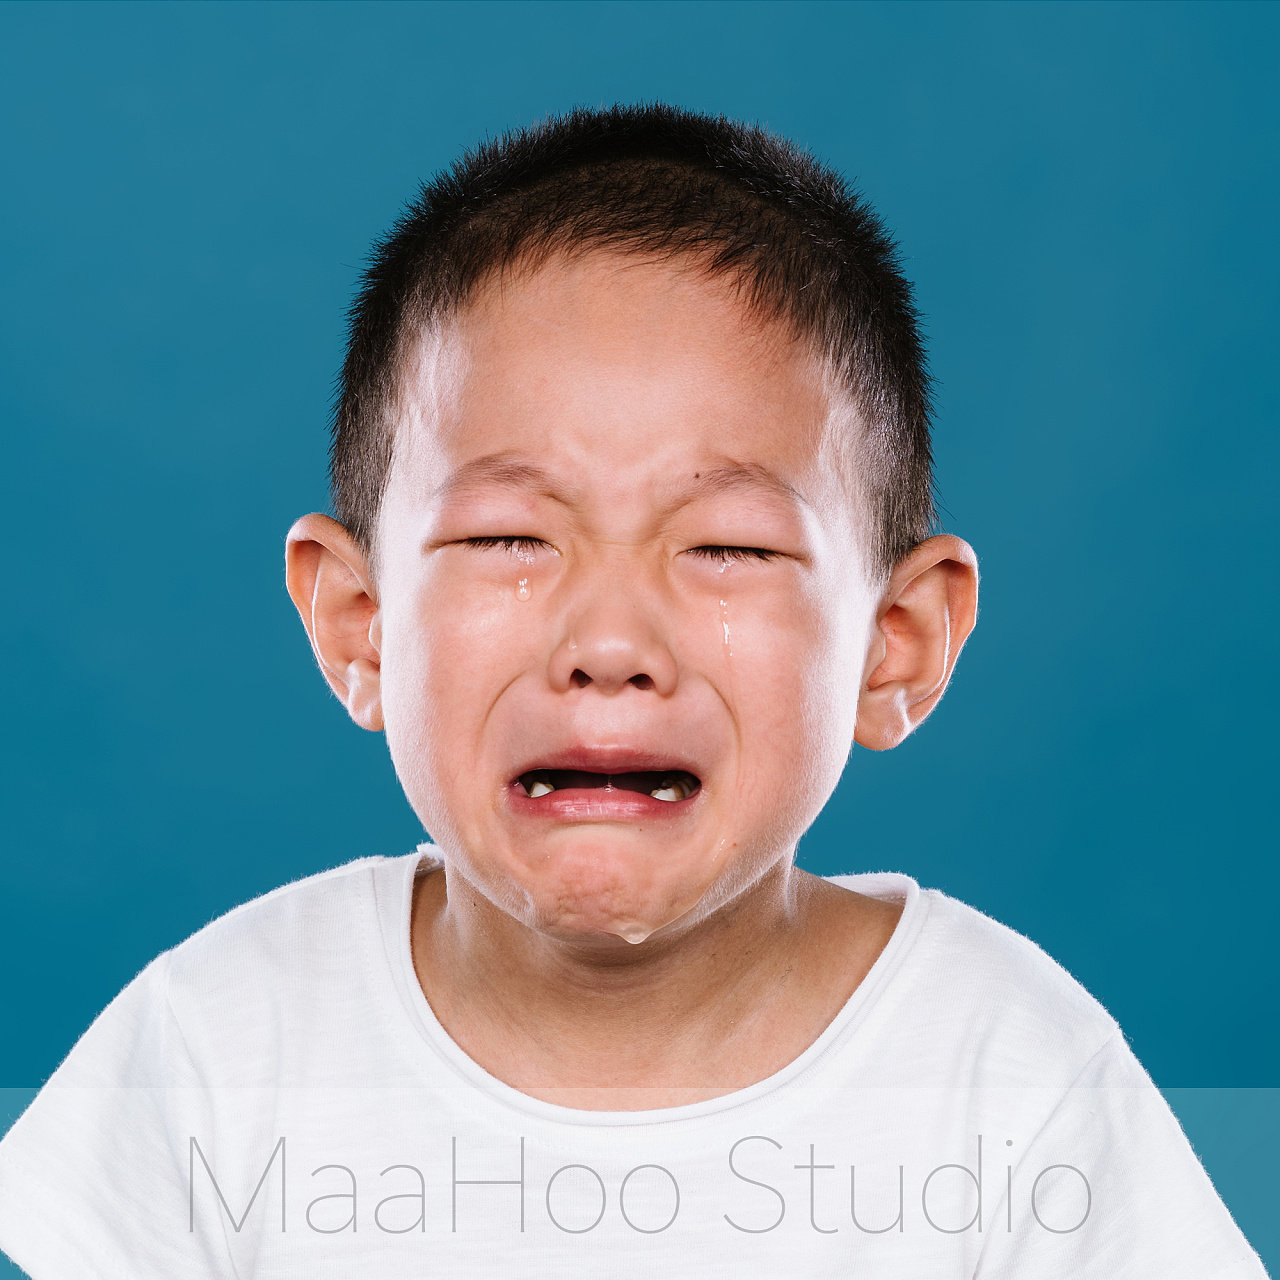 哭泣的小孩图片可爱图片